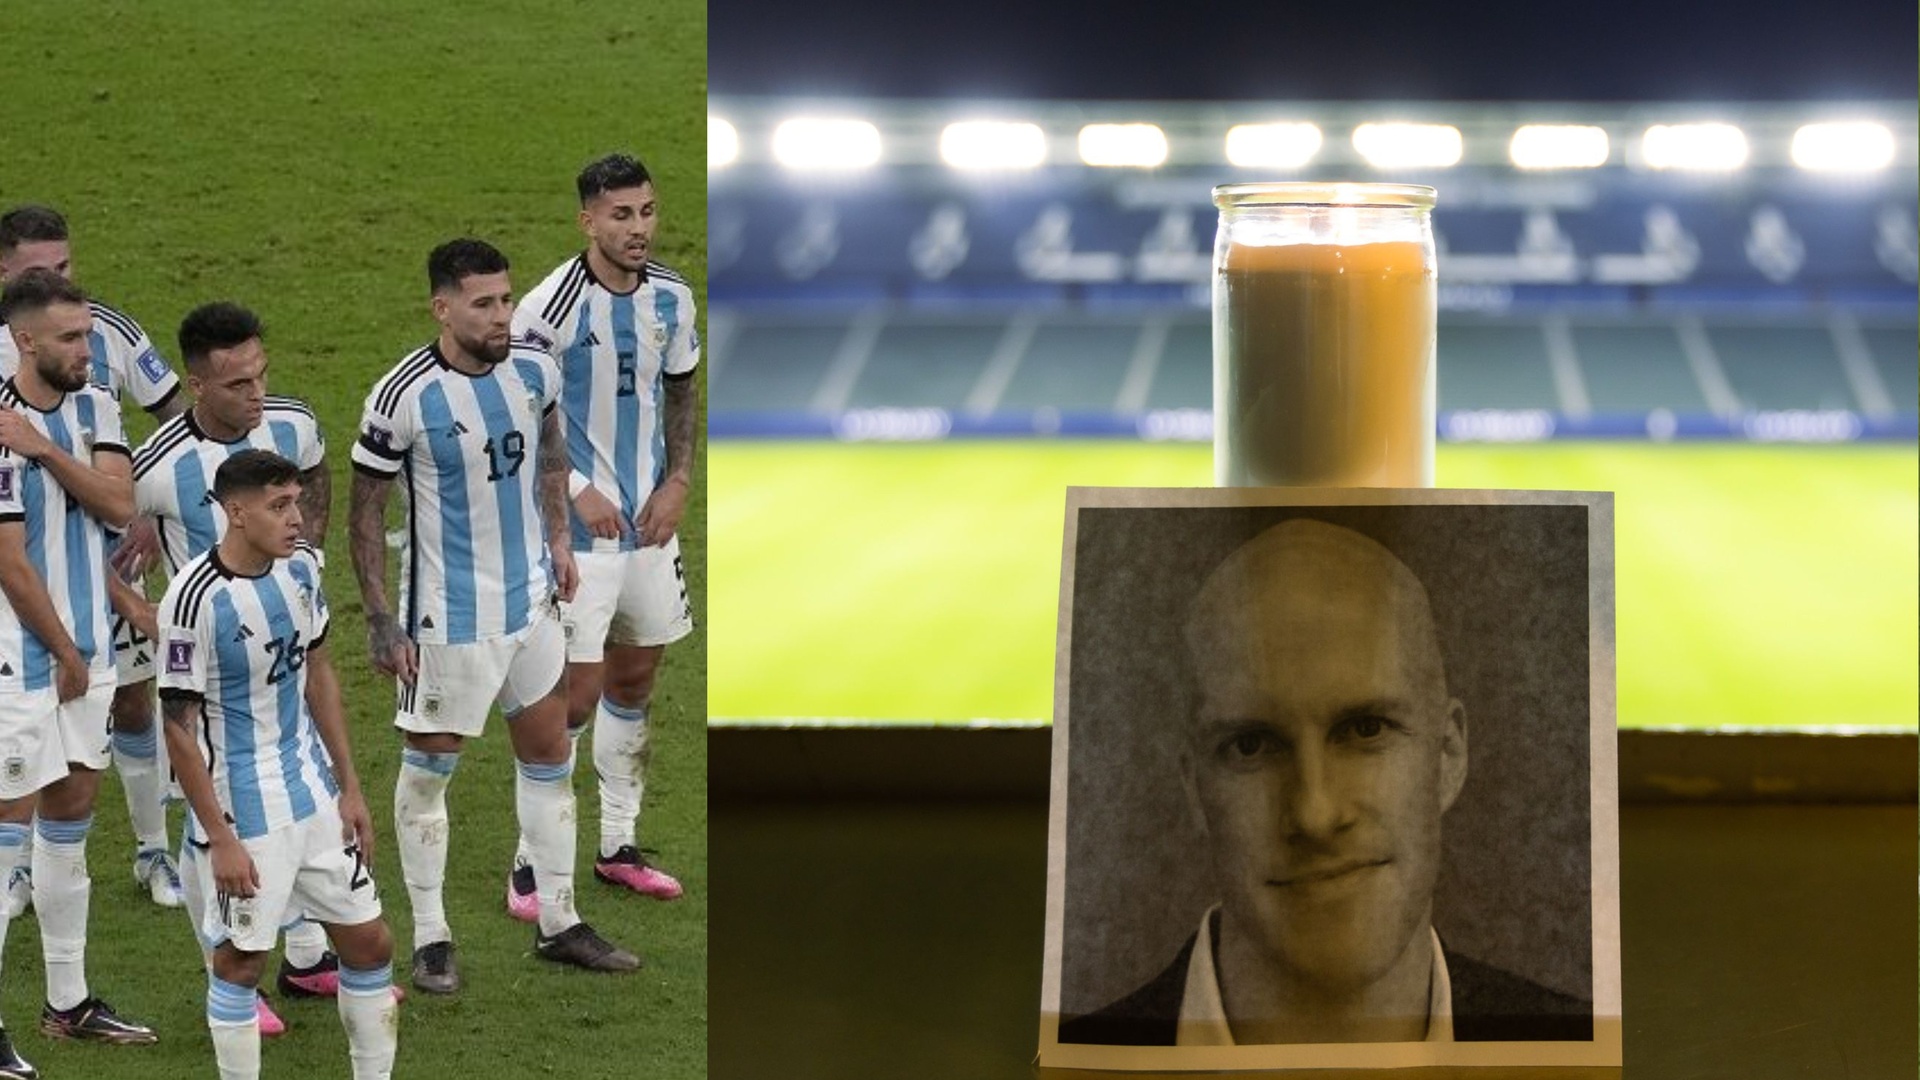 وفاة مفاجئة تطال صحفي خليجي ..أثناء تغطية كأس العالم بقطر بعد يوم من وفاة صحفي أمريكي بشكل مشابه -صور